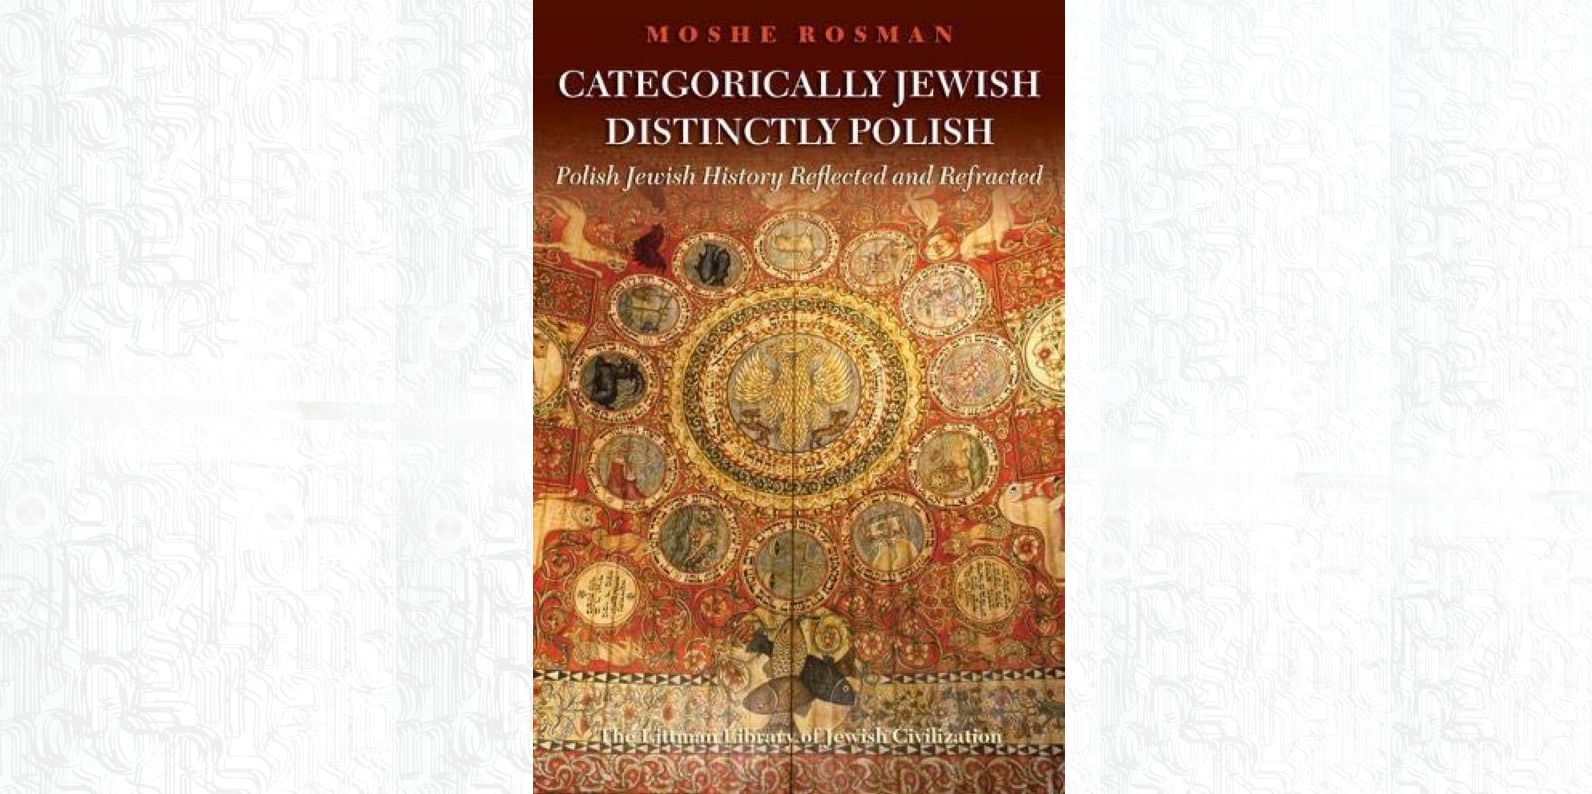 Okładka książki Moshe Rosmana "Categorically Jewish, Distinctly Polish: Polish Jewish History Reflected and Refracted".